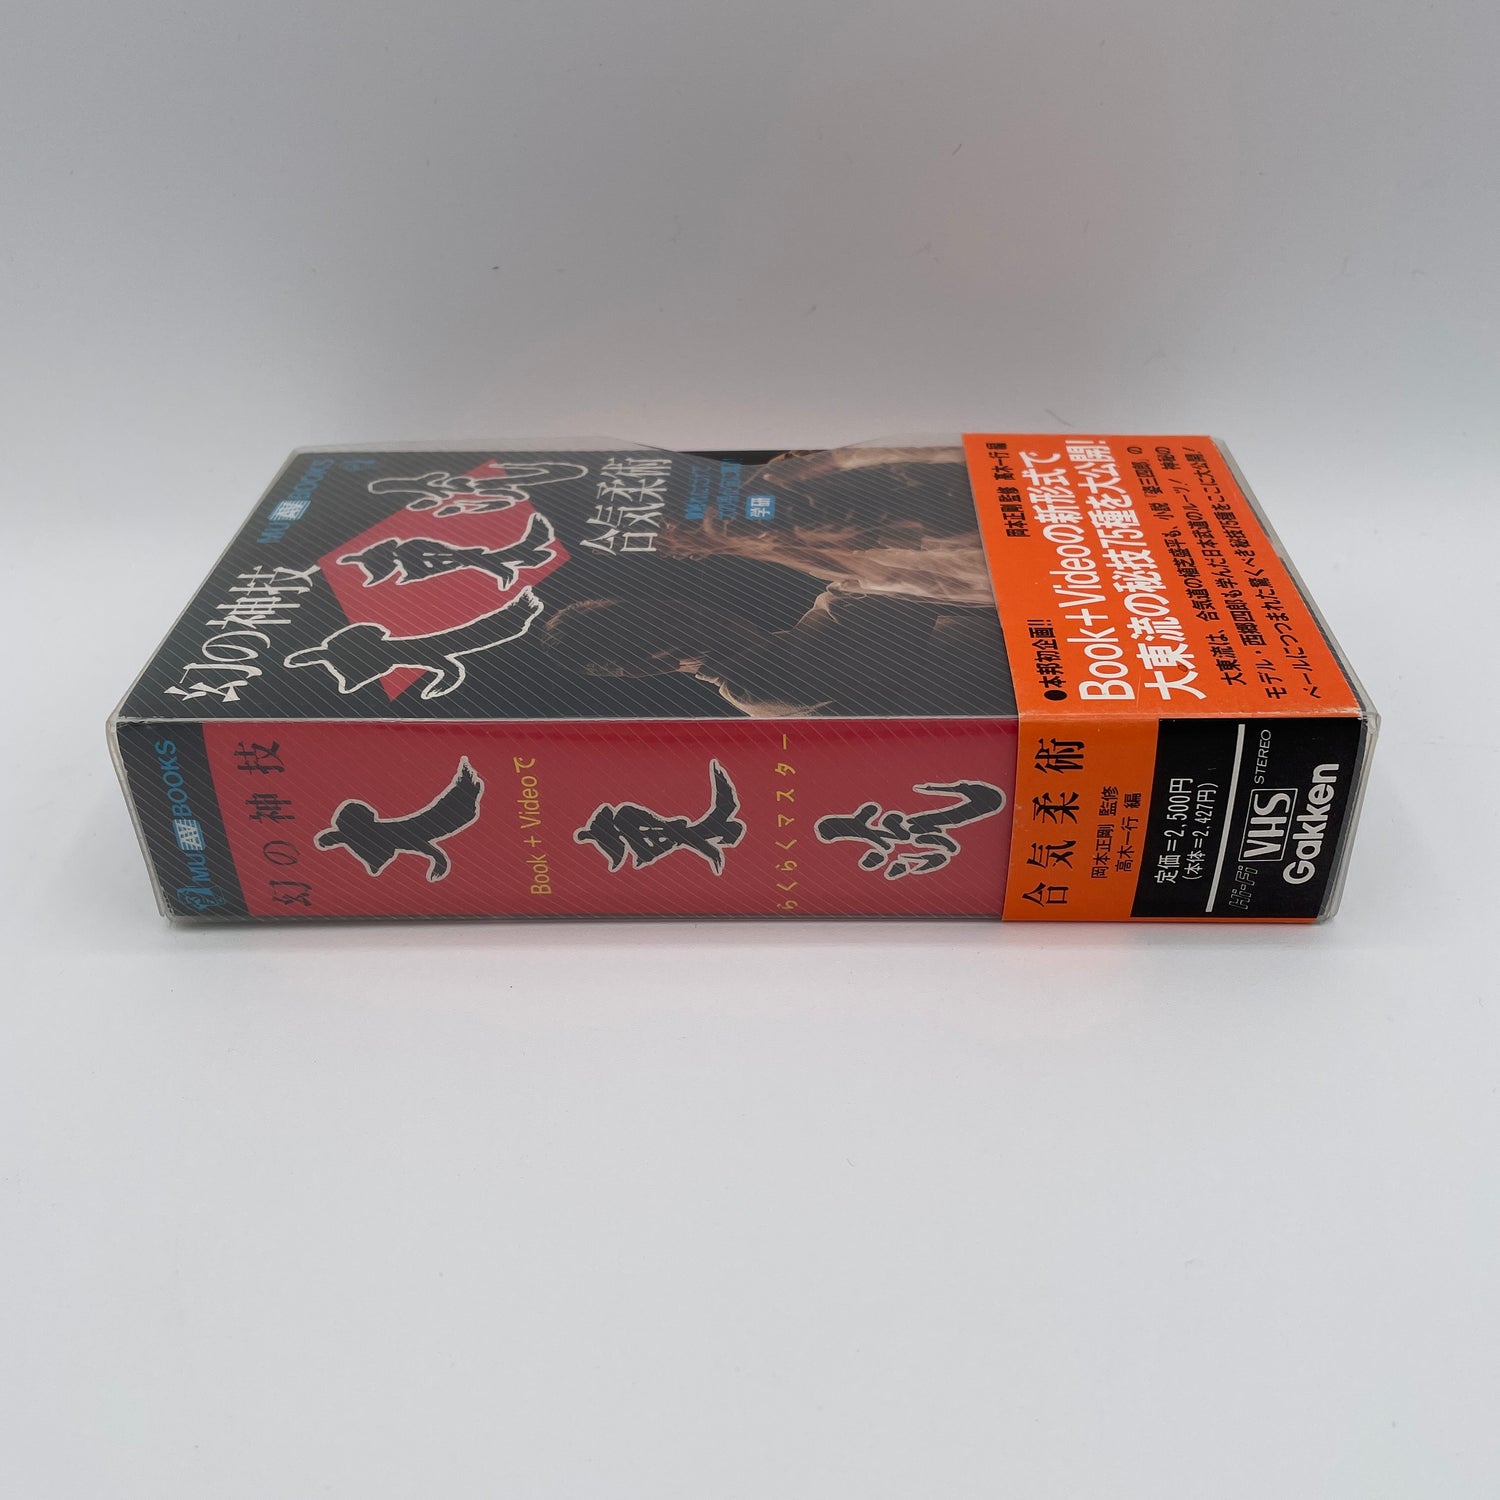 Juego de libro y VHS de secretos de Daito Ryu Aikijujutsu de Seigo Okamoto (usado)